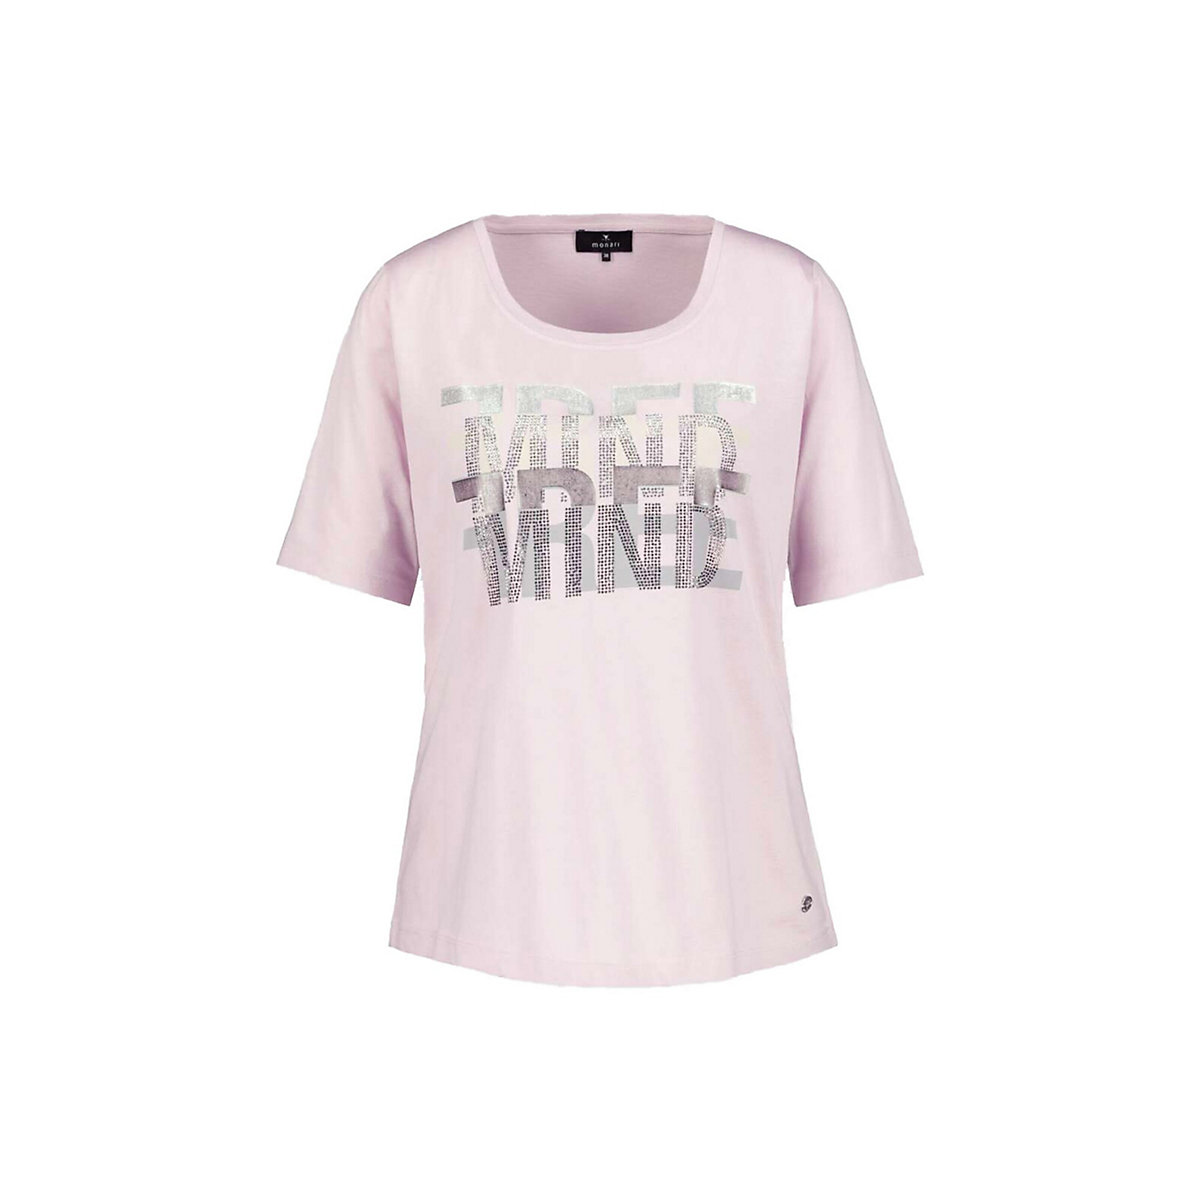 monari T-Shirt für Mädchen silber/rosa